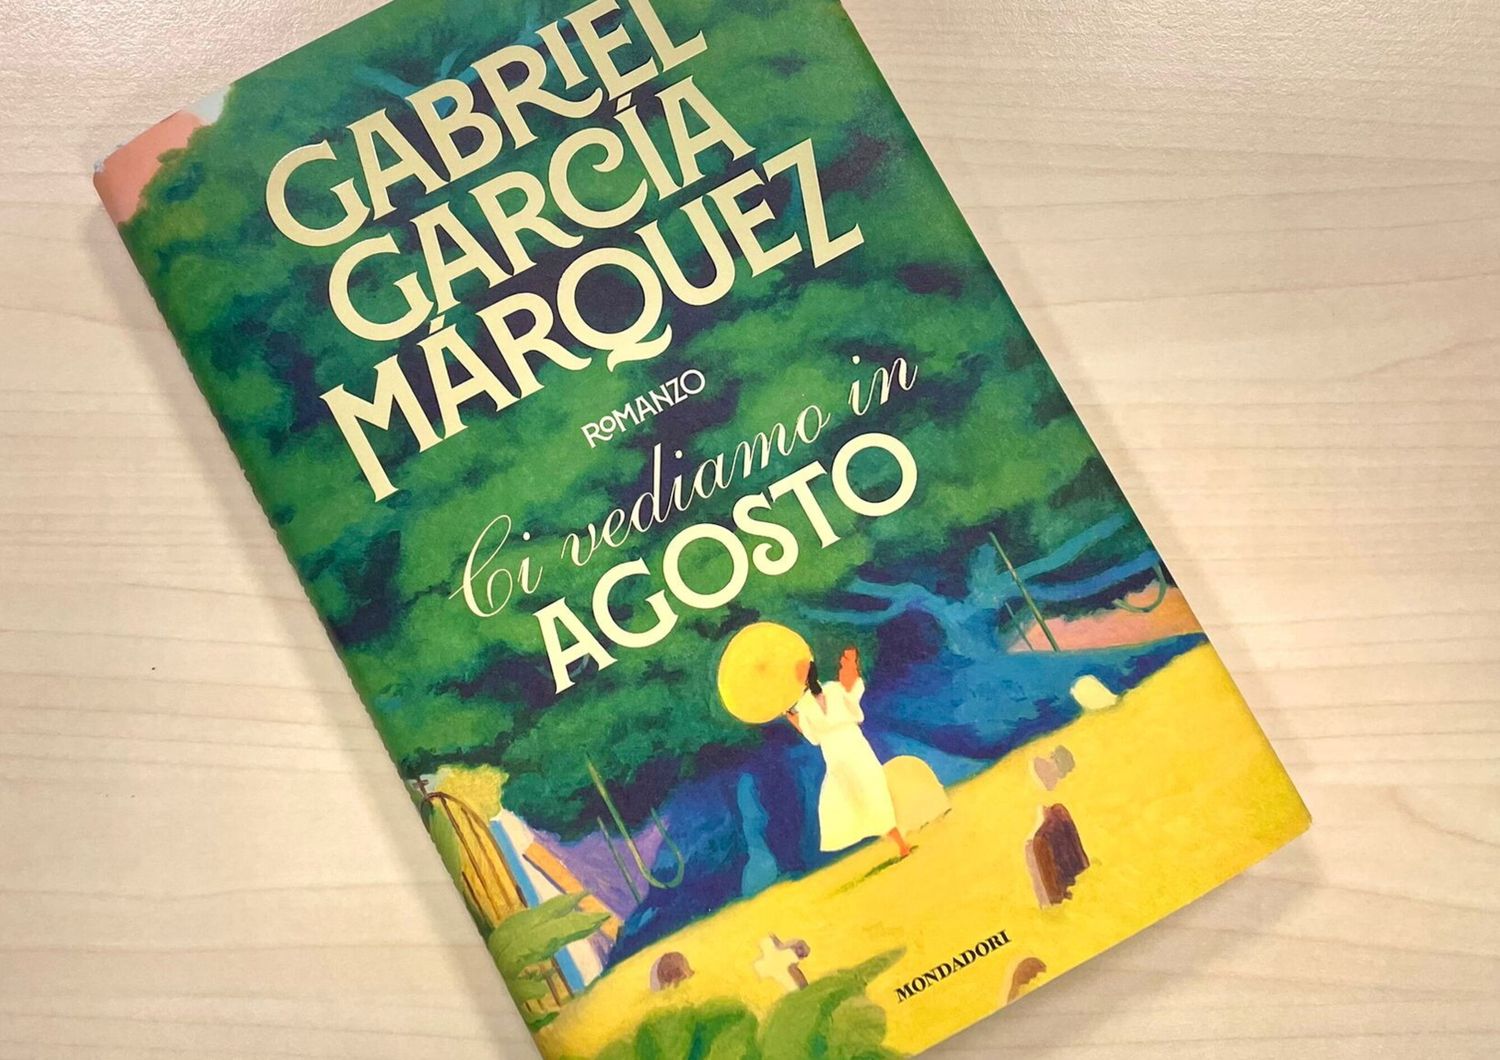 Dal 6 marzo in libreria il nuovo libro di Gabriel Garcia Marquez a 10 anni dalla morte